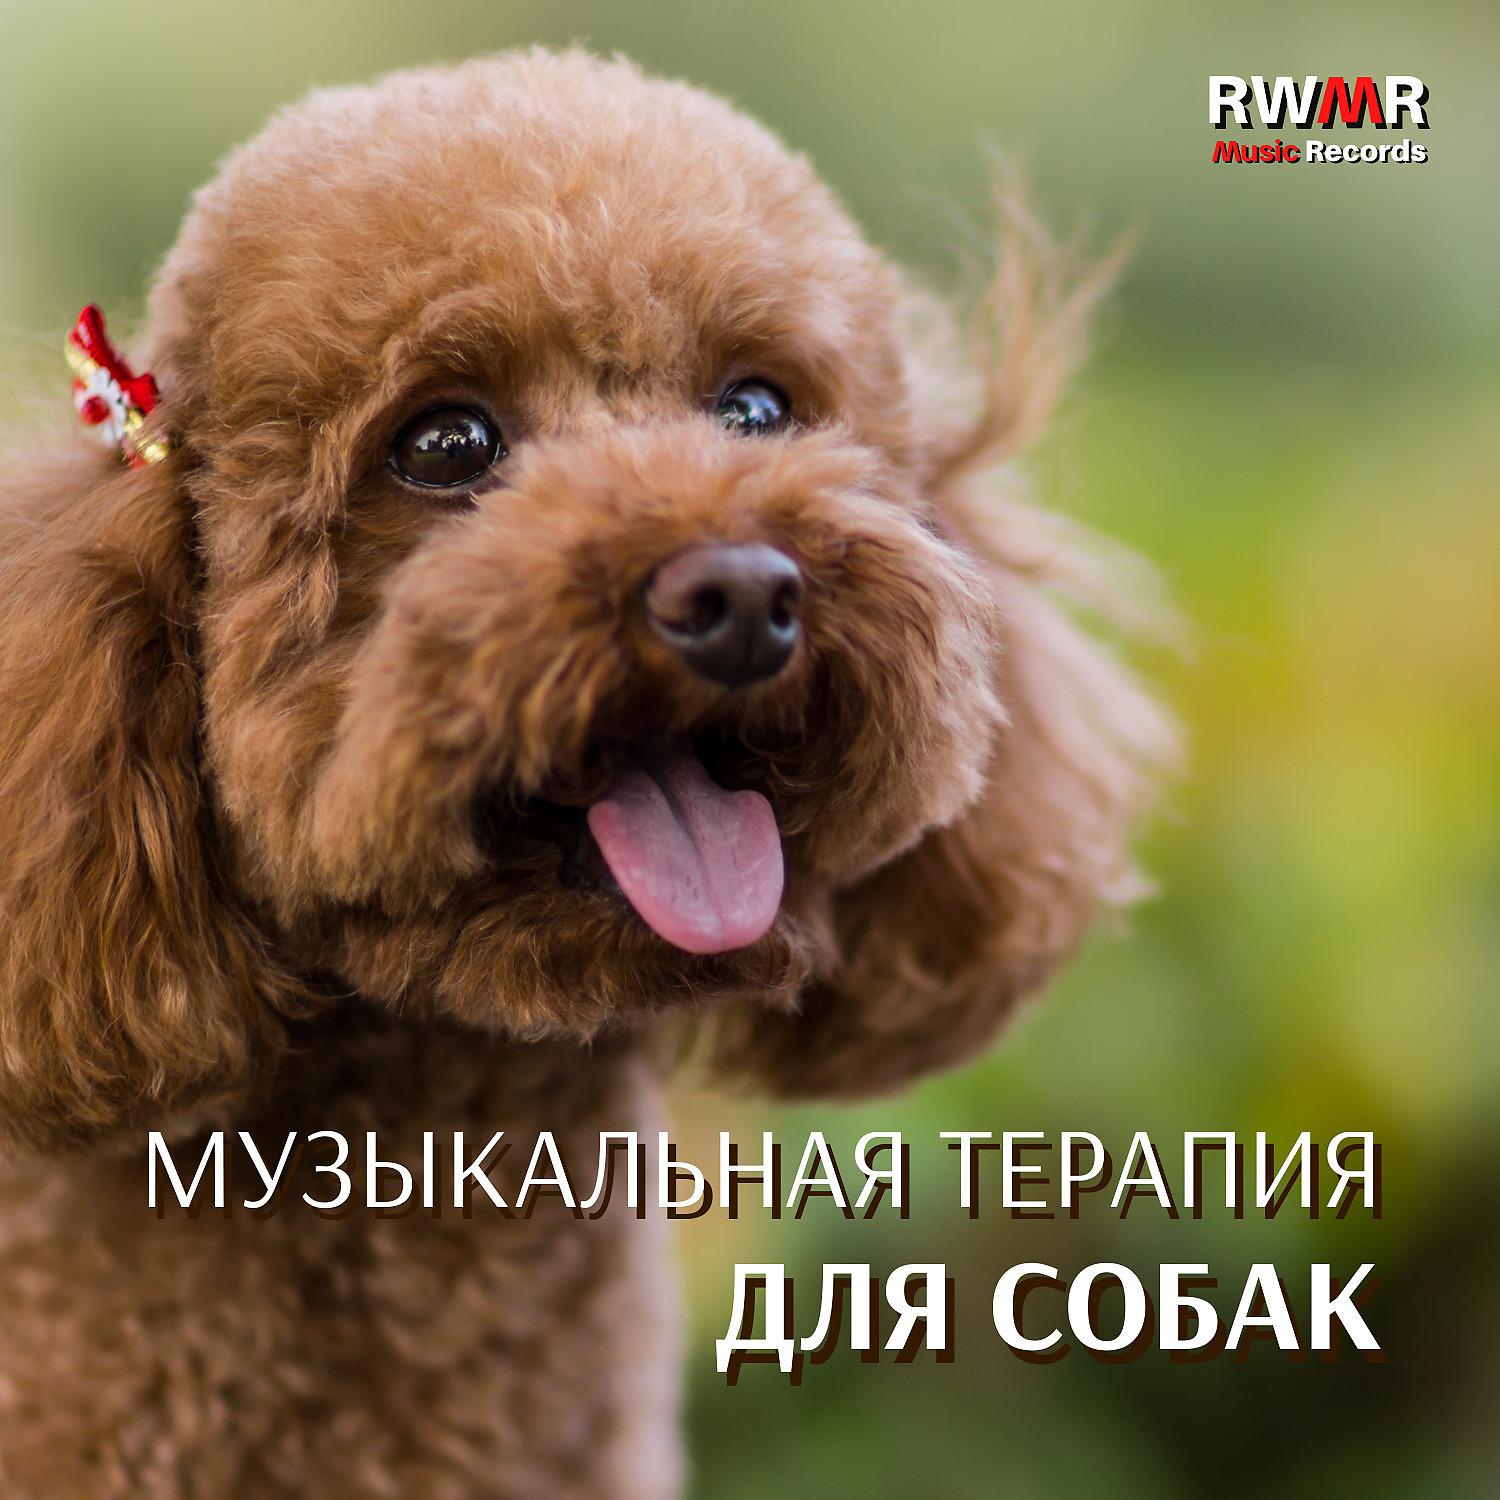 Постер альбома Музыкальная терапия для собак – Фоновая музыка для животных, которые одни дома, расслабление, спокойствие, отсутствие страха, успокаивающие мелодии для уменьшения беспокойства